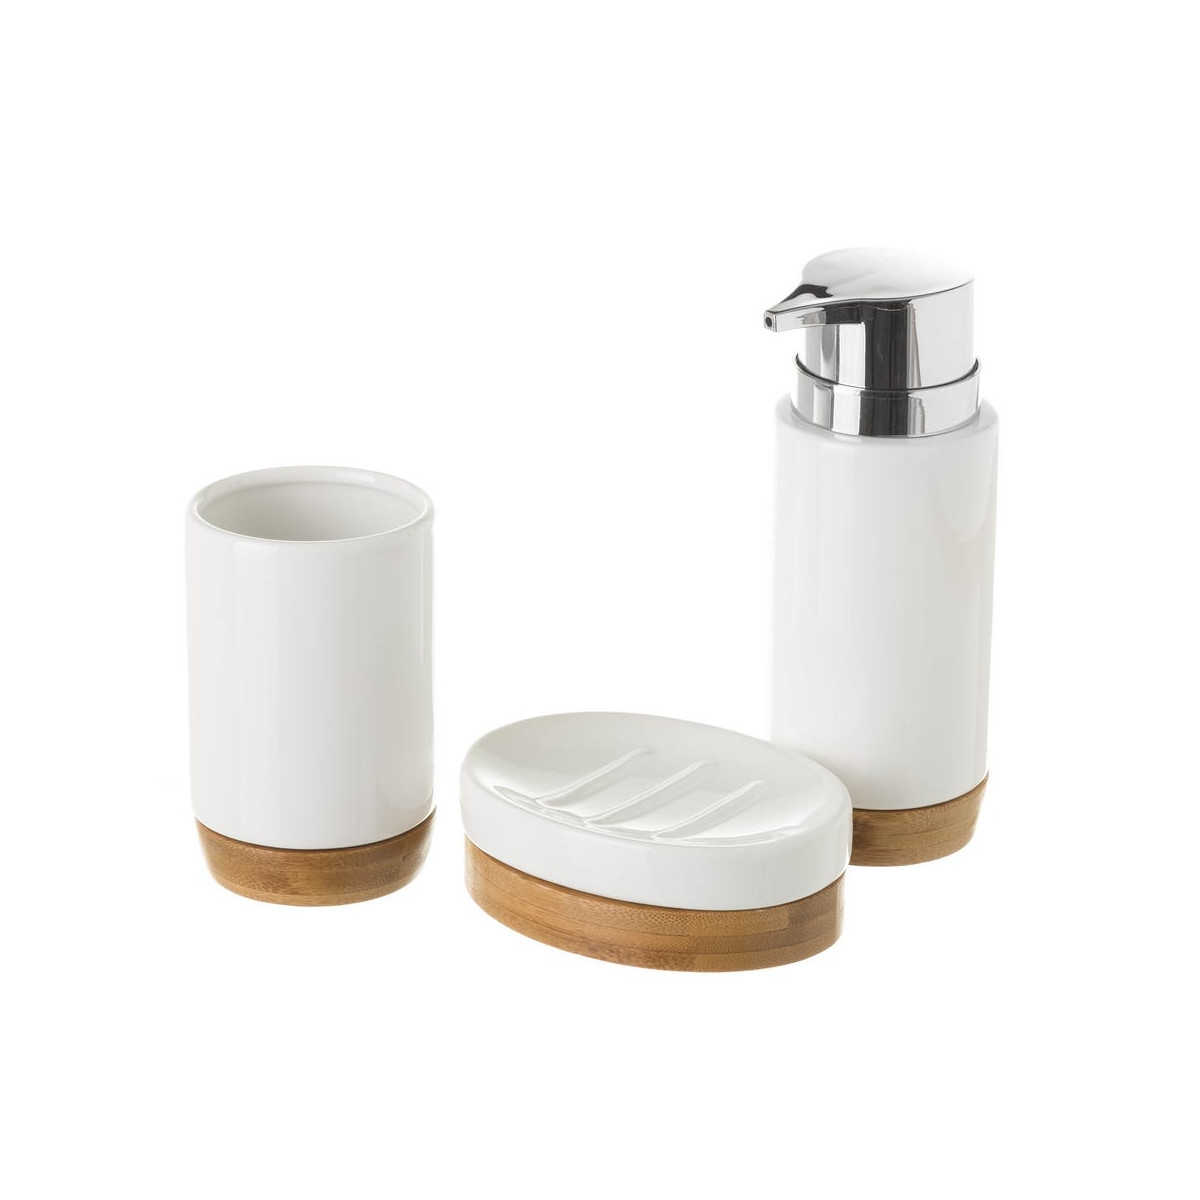 Set salle de bain céramique blanche et bambou - 3 pièces